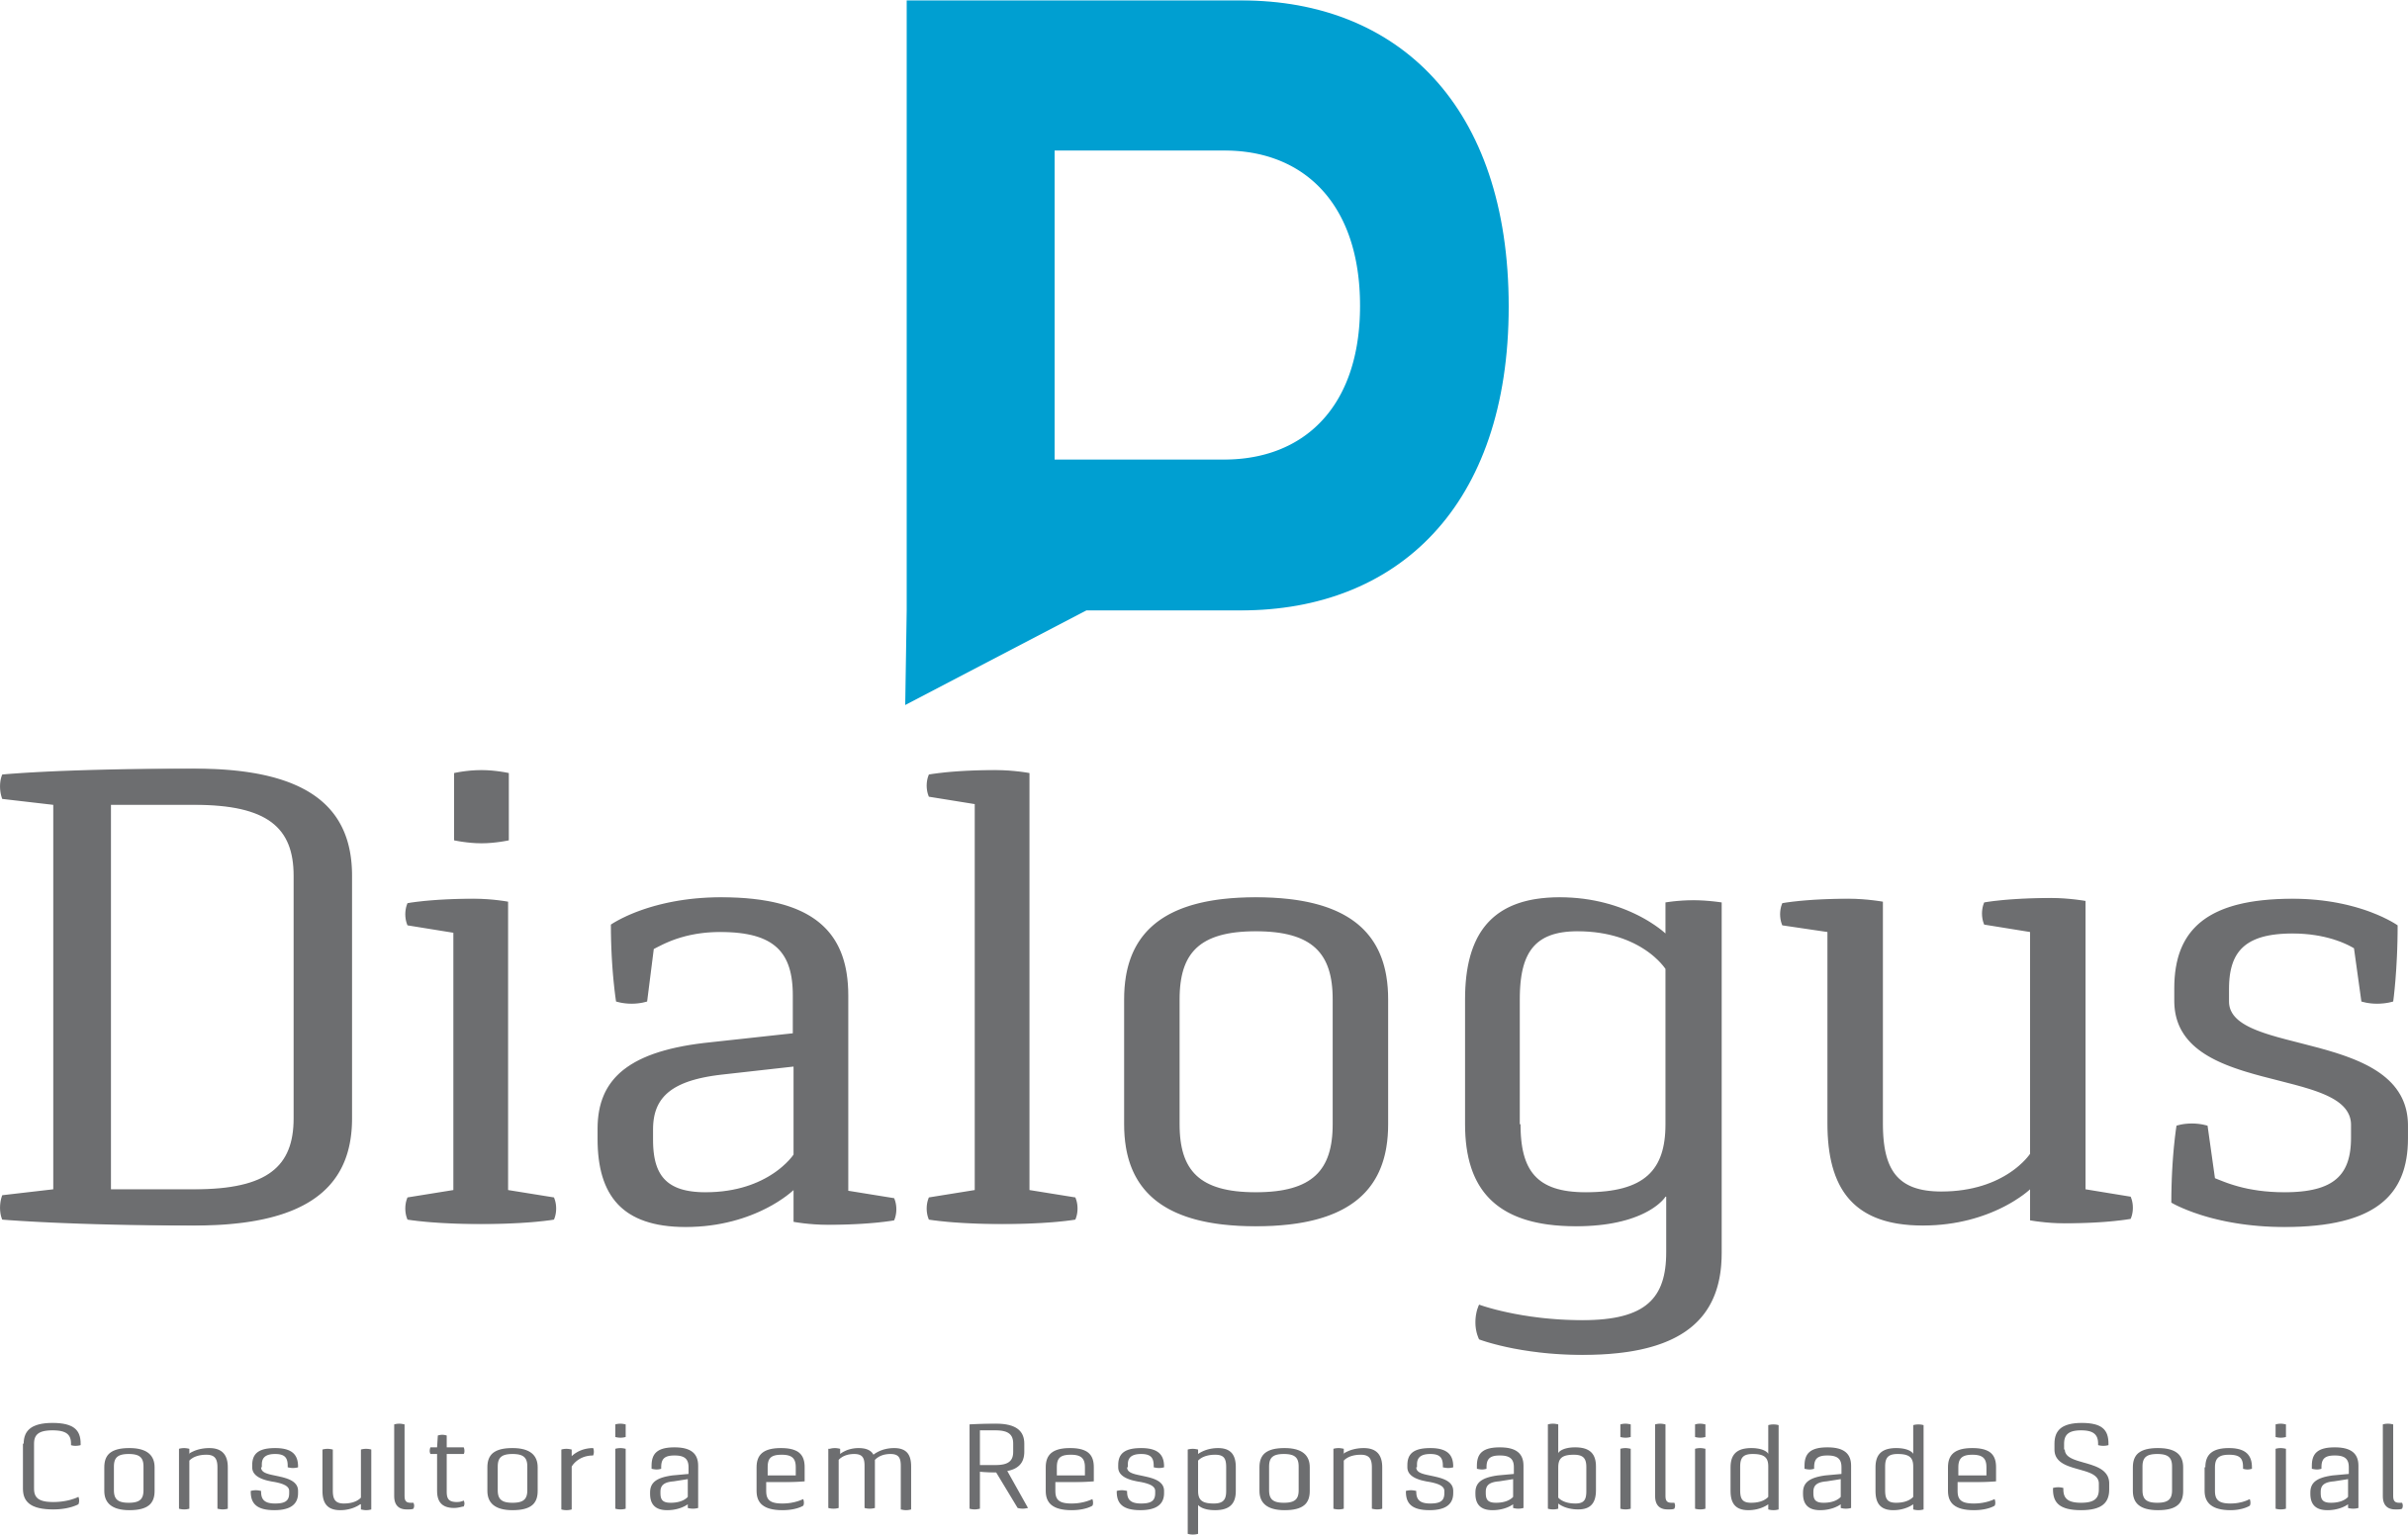 Dialogus Responsabilidade Social - Consultoria - Programa de Voluntariado - Fortaleza/CE